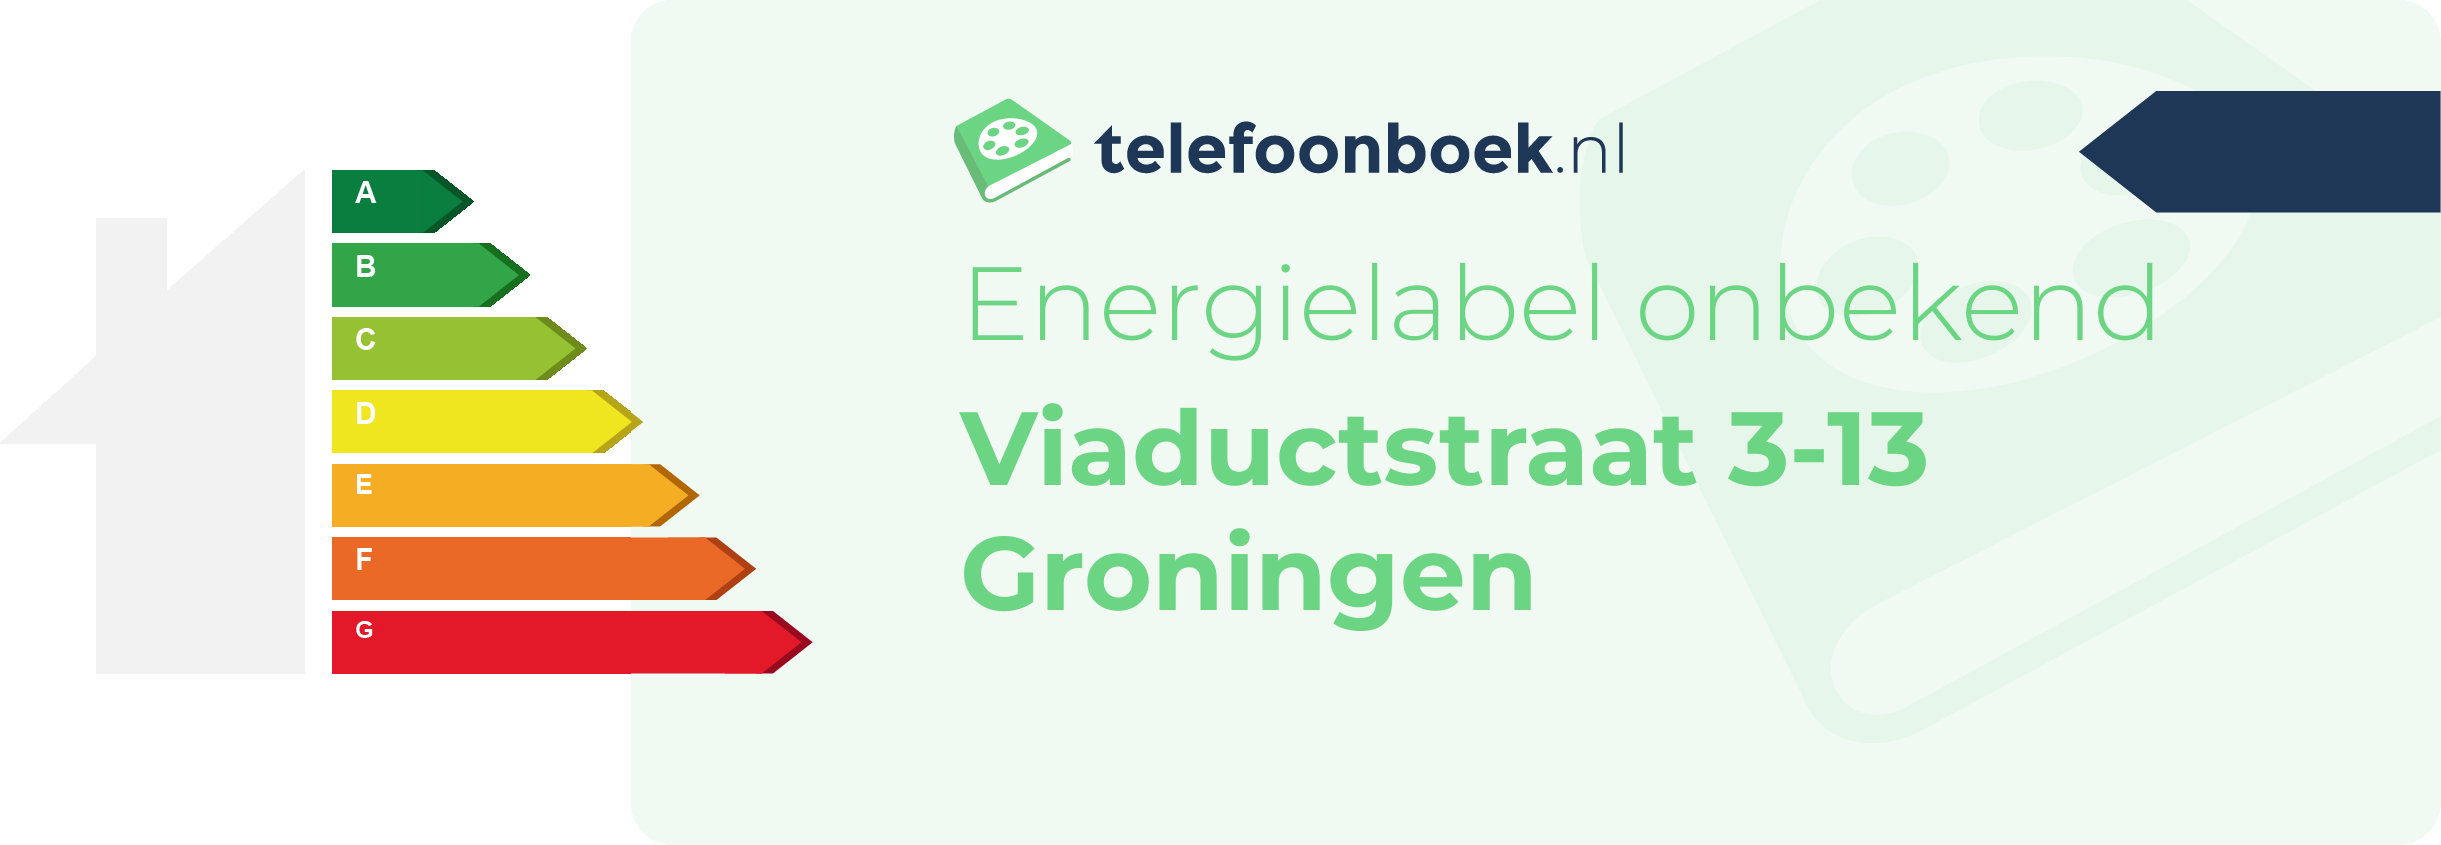 Energielabel Viaductstraat 3-13 Groningen